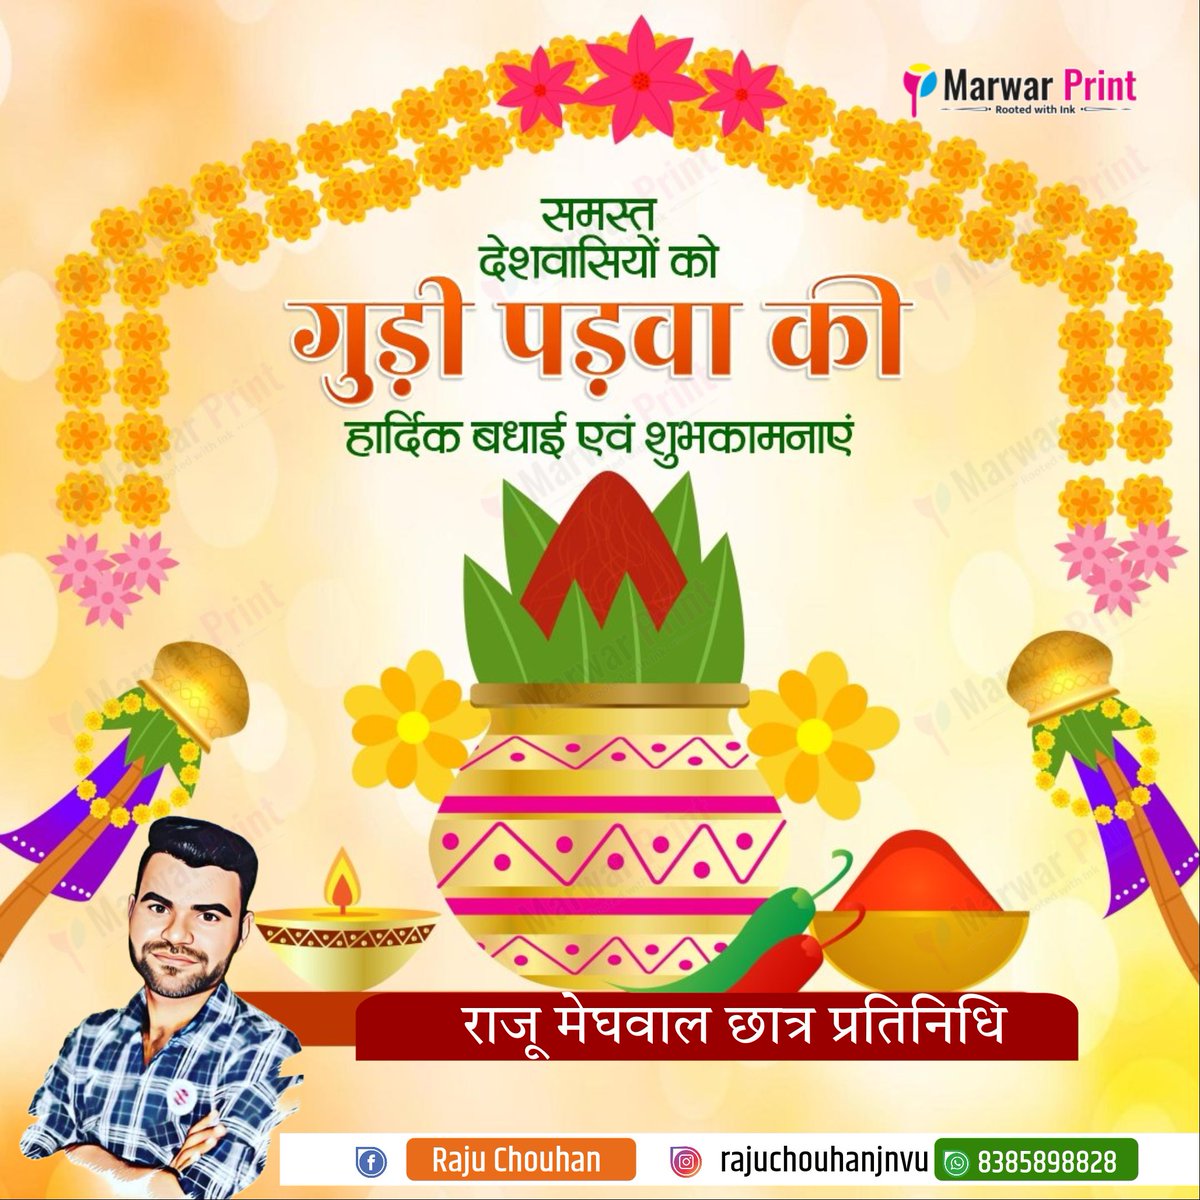 नव वर्ष, नव उमंग, नव उल्लास। 

गुड़ी पड़वा, चैत्र नवरात्रि, उगादी, चेइराओबा, चेटीचंड और सजीबू त्योहार की समस्त देशवासियों को हार्दिक बधाई एवं शुभकामनाएं।

नया साल आप सभी के जीवन में सुख, शांति एवं समृद्धि लेकर आए।
#GudiPadwa #HappyNavratri 
#HappyNavratri_2024 #PBKSvsSRH